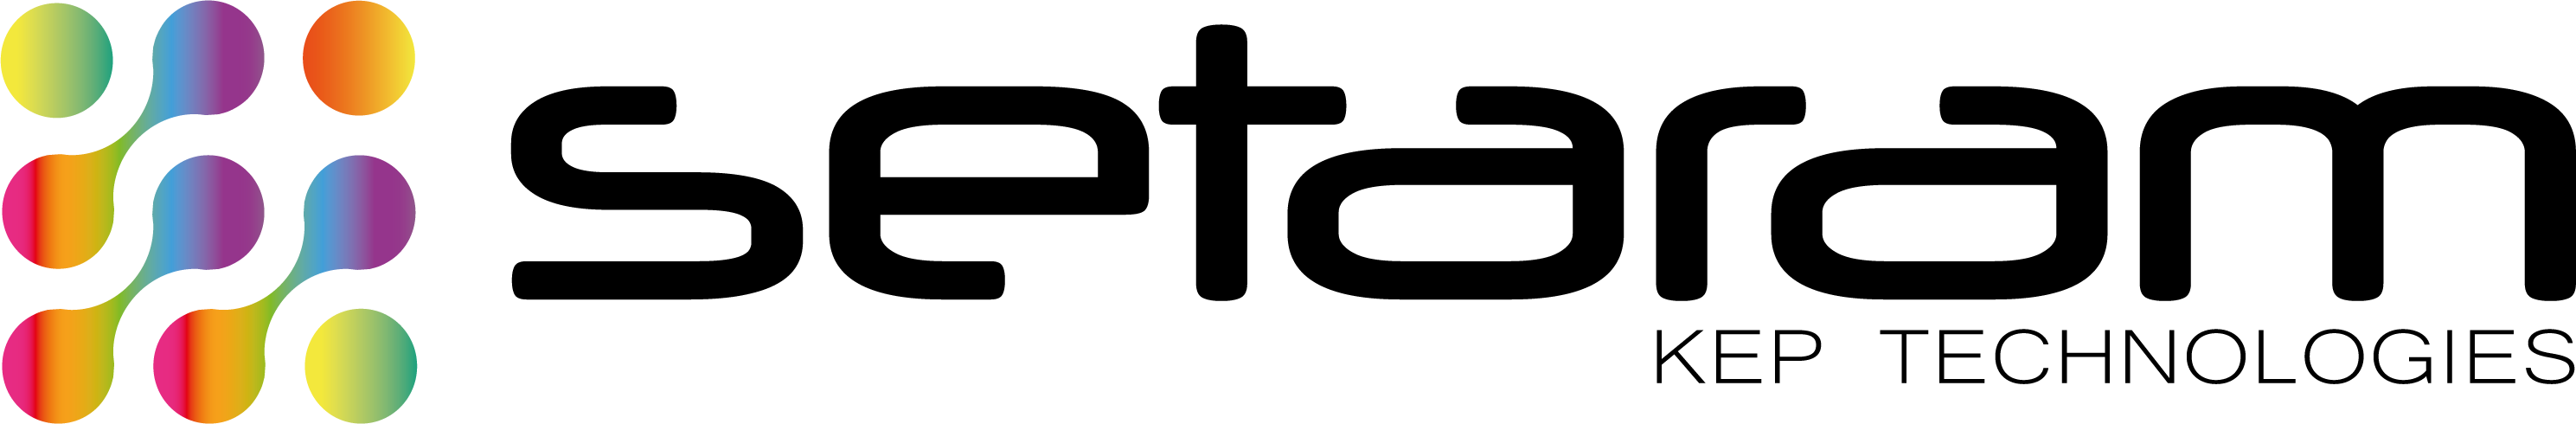 法国凯璞科技集团旗下塞塔拉姆仪器